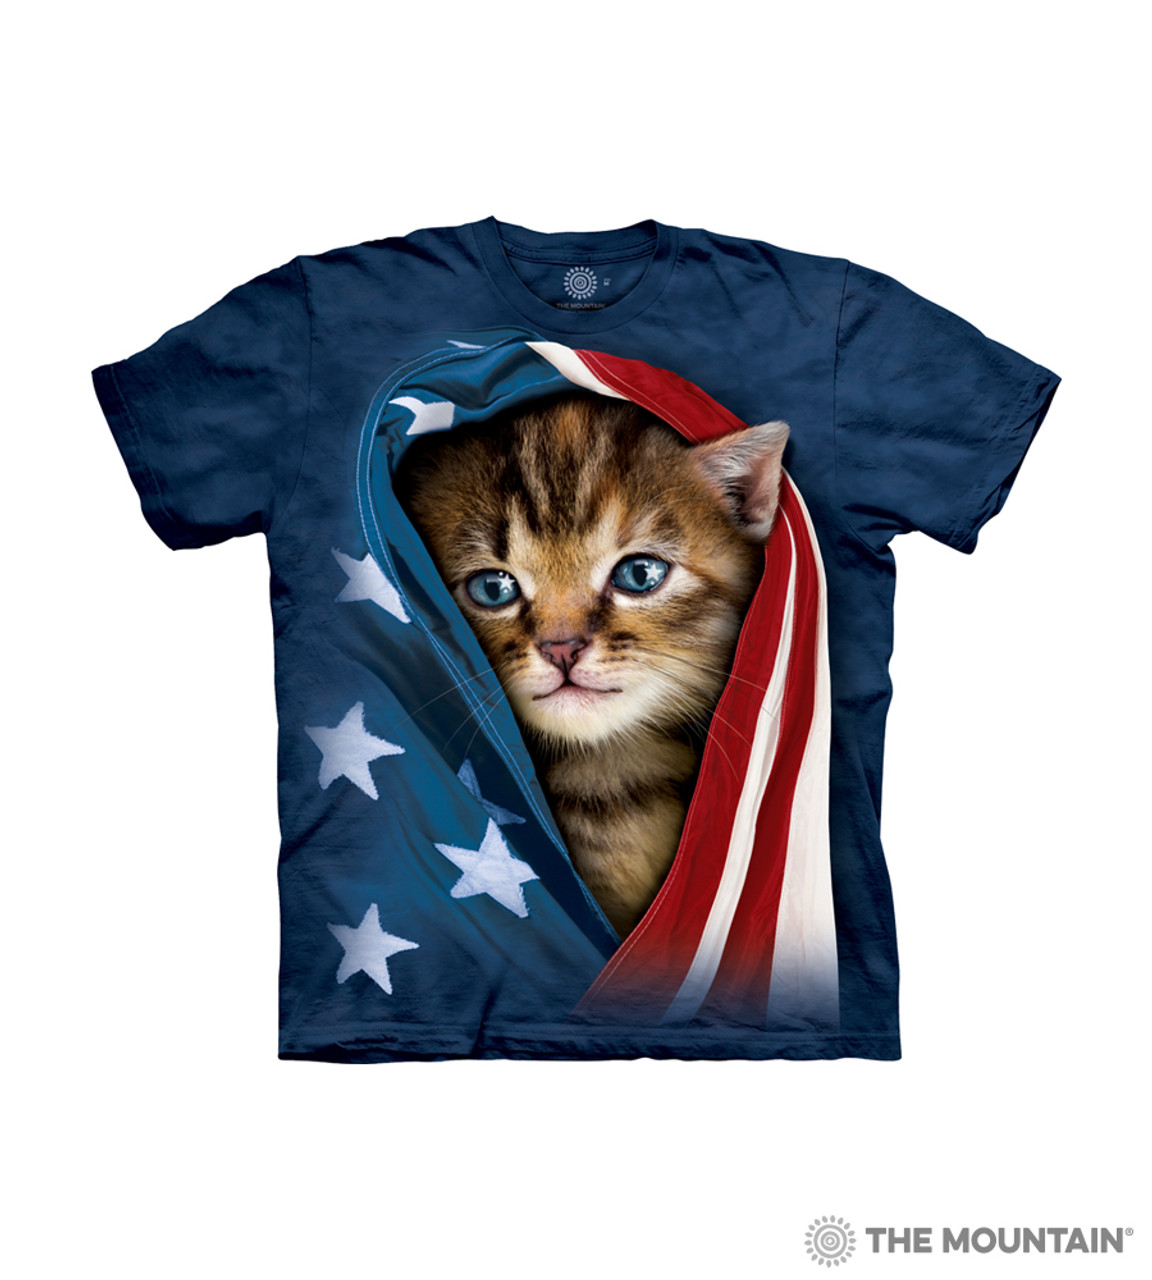 kitten it shirt